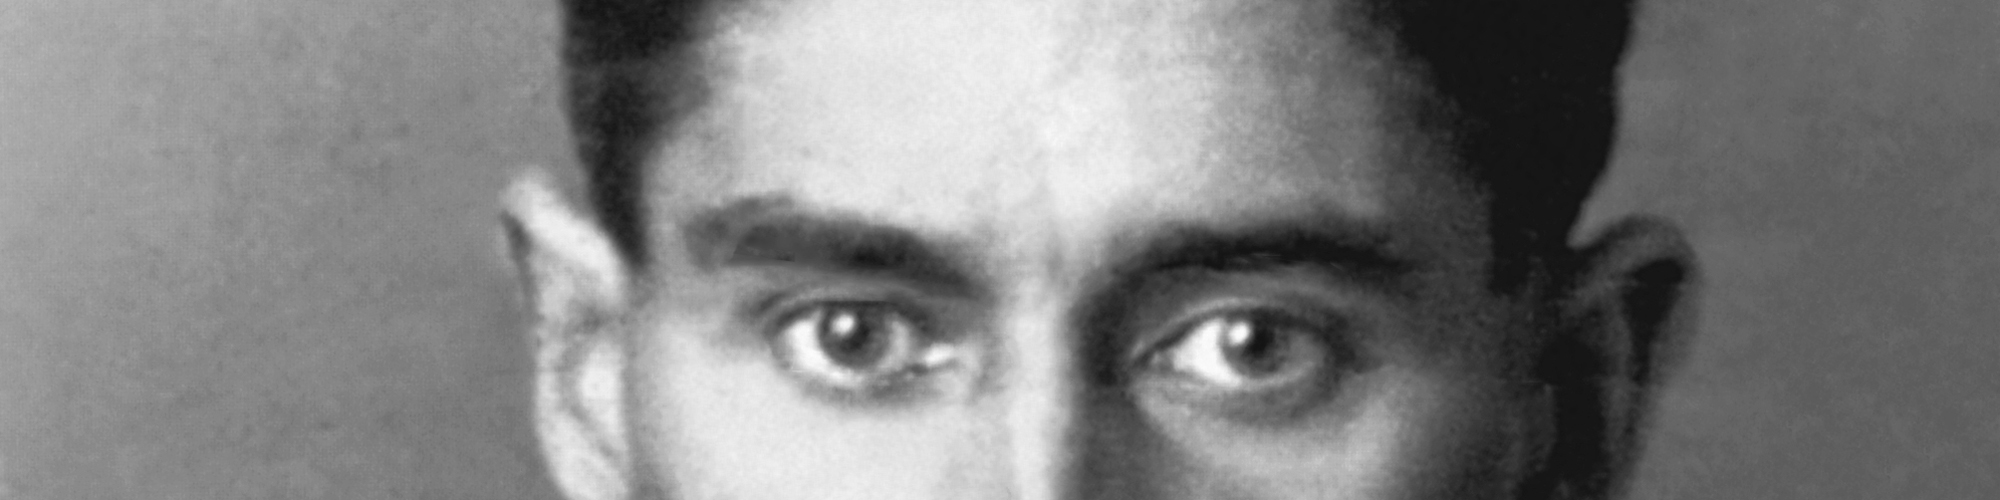 Augenpartie von Franz Kafka, Ausschnitt aus einem historischen Foto